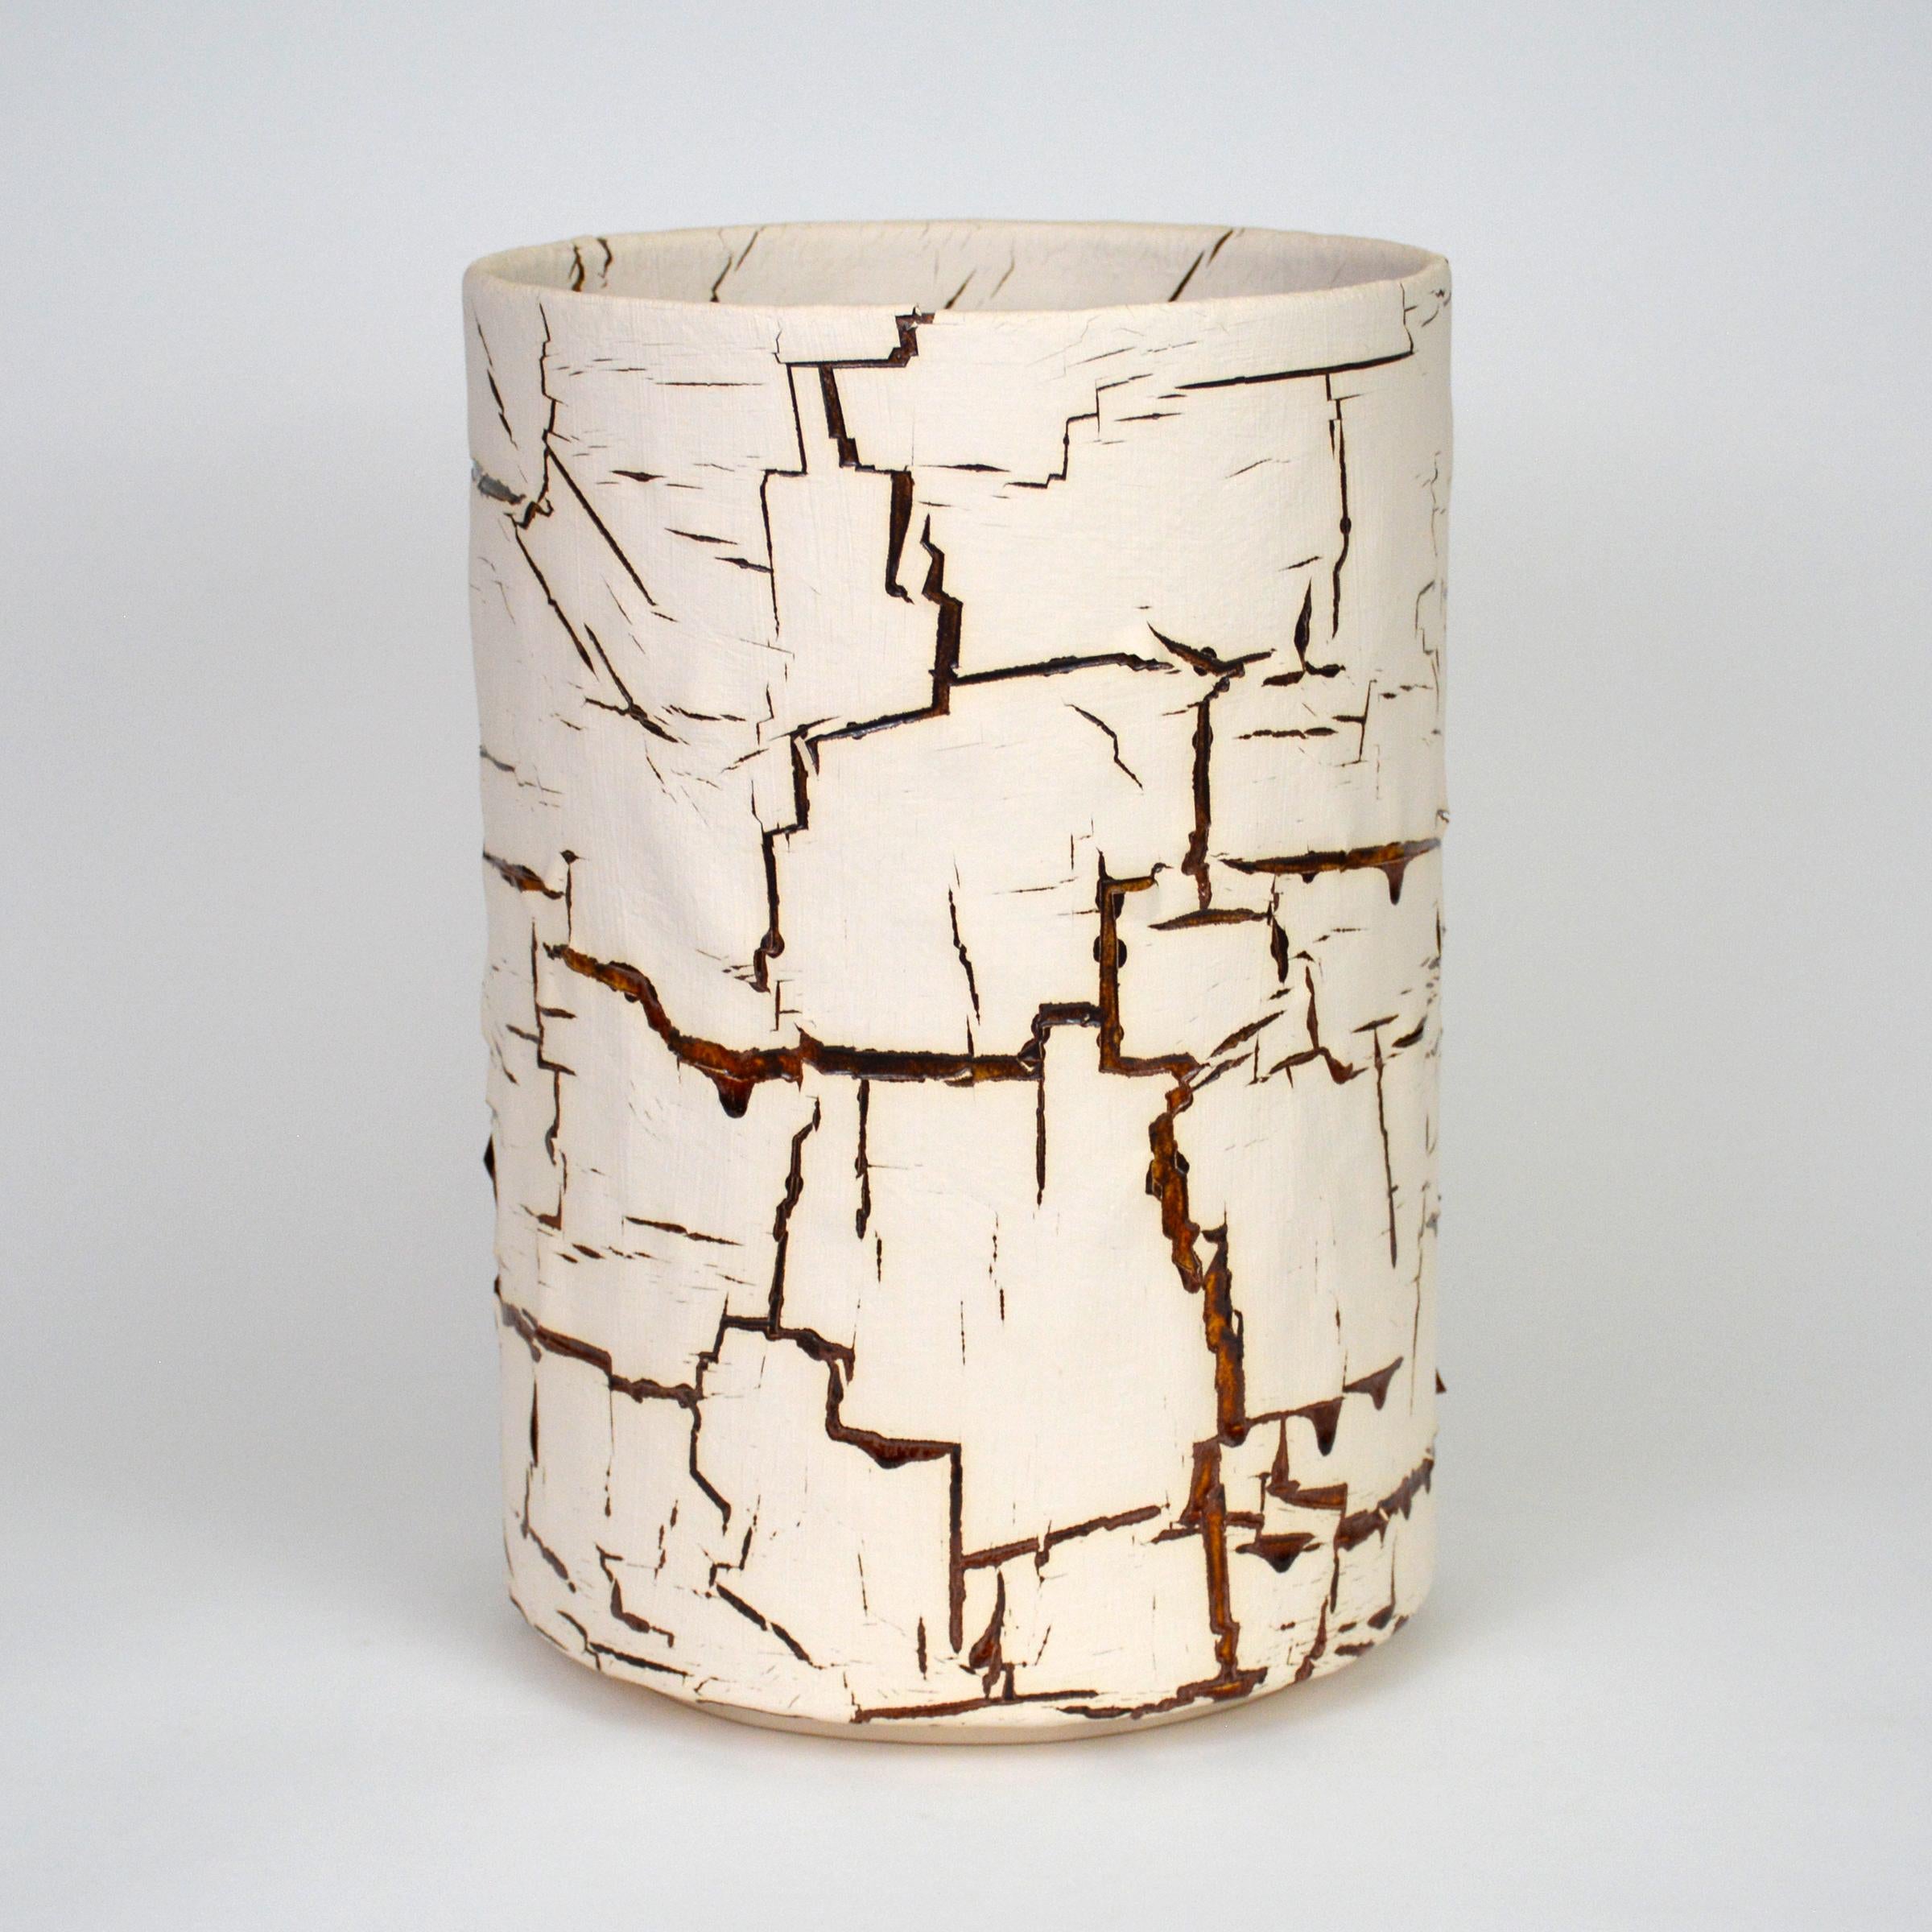 Zylindrische, glasierte Keramikskulptur von William Edwards
Handgefertigtes Steingutgefäß, mehrfach gebrannt, um eine strukturierte Oberfläche von zufälliger Abstraktion zu erhalten, weiß matt mit durchbrechender bernsteinfarbener